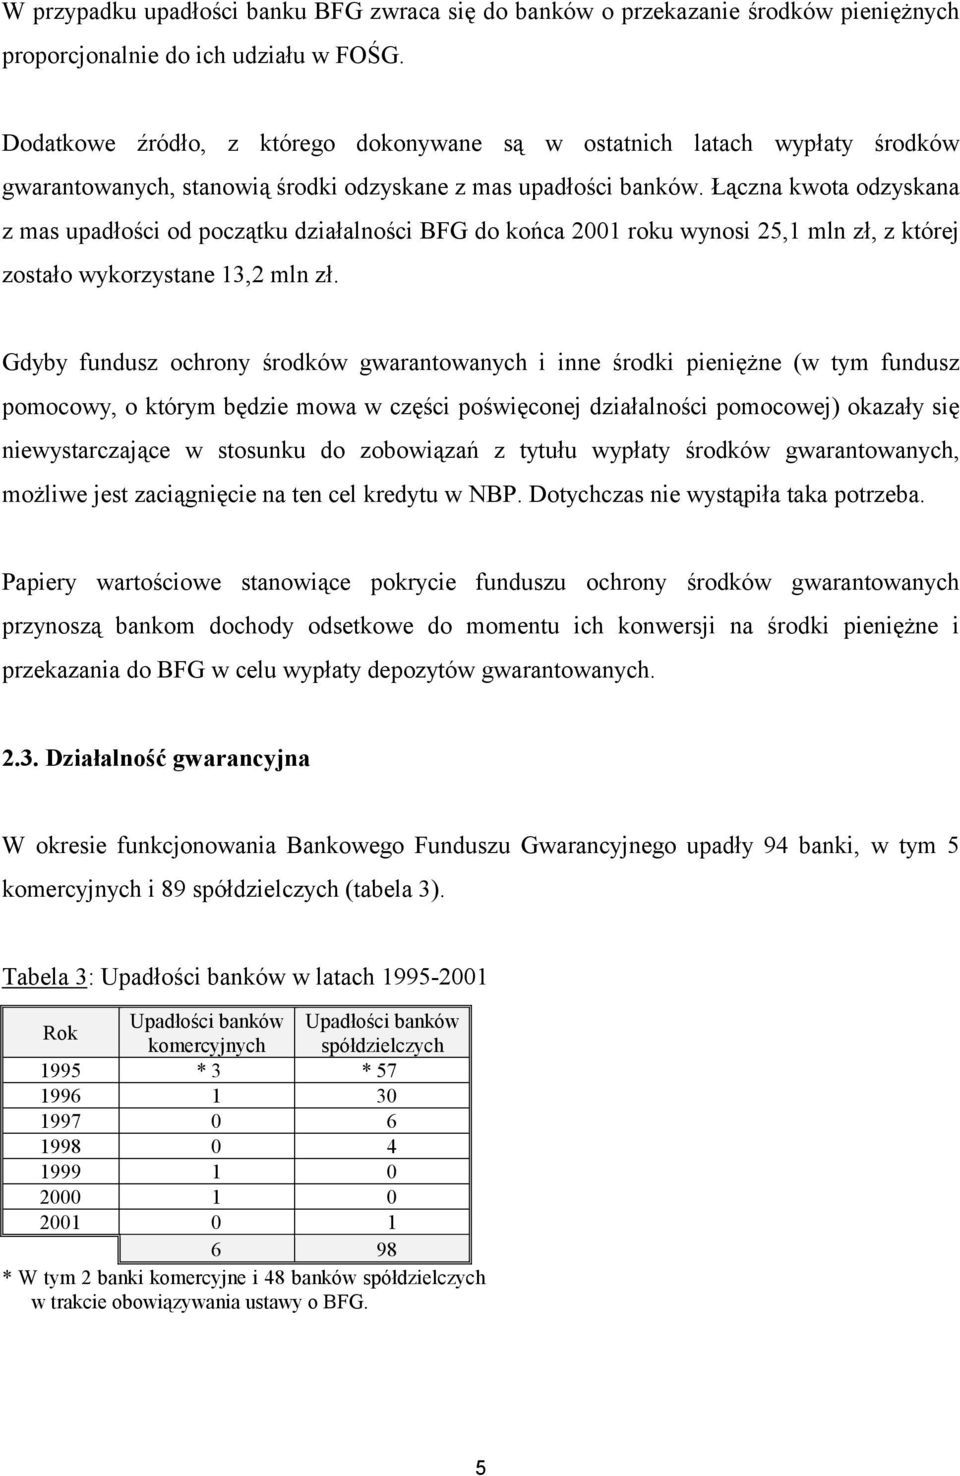 Łączna kwota odzyskana z mas upadłości od początku działalności BFG do końca 2001 roku wynosi 25,1 mln zł, z której zostało wykorzystane 13,2 mln zł.